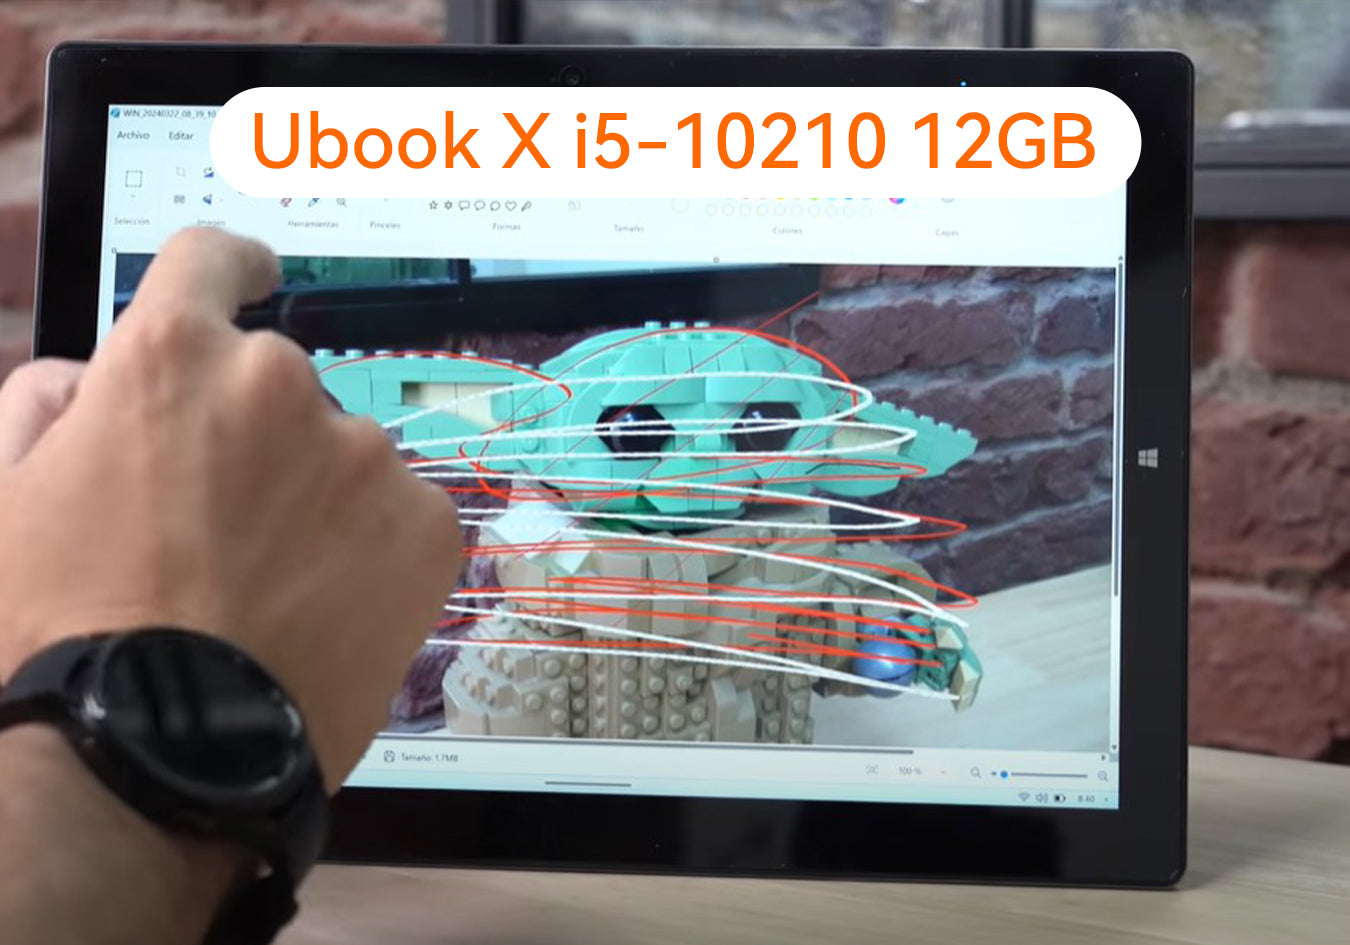 Ubook X i5-10210 12GB: Descripción a fondo y programas